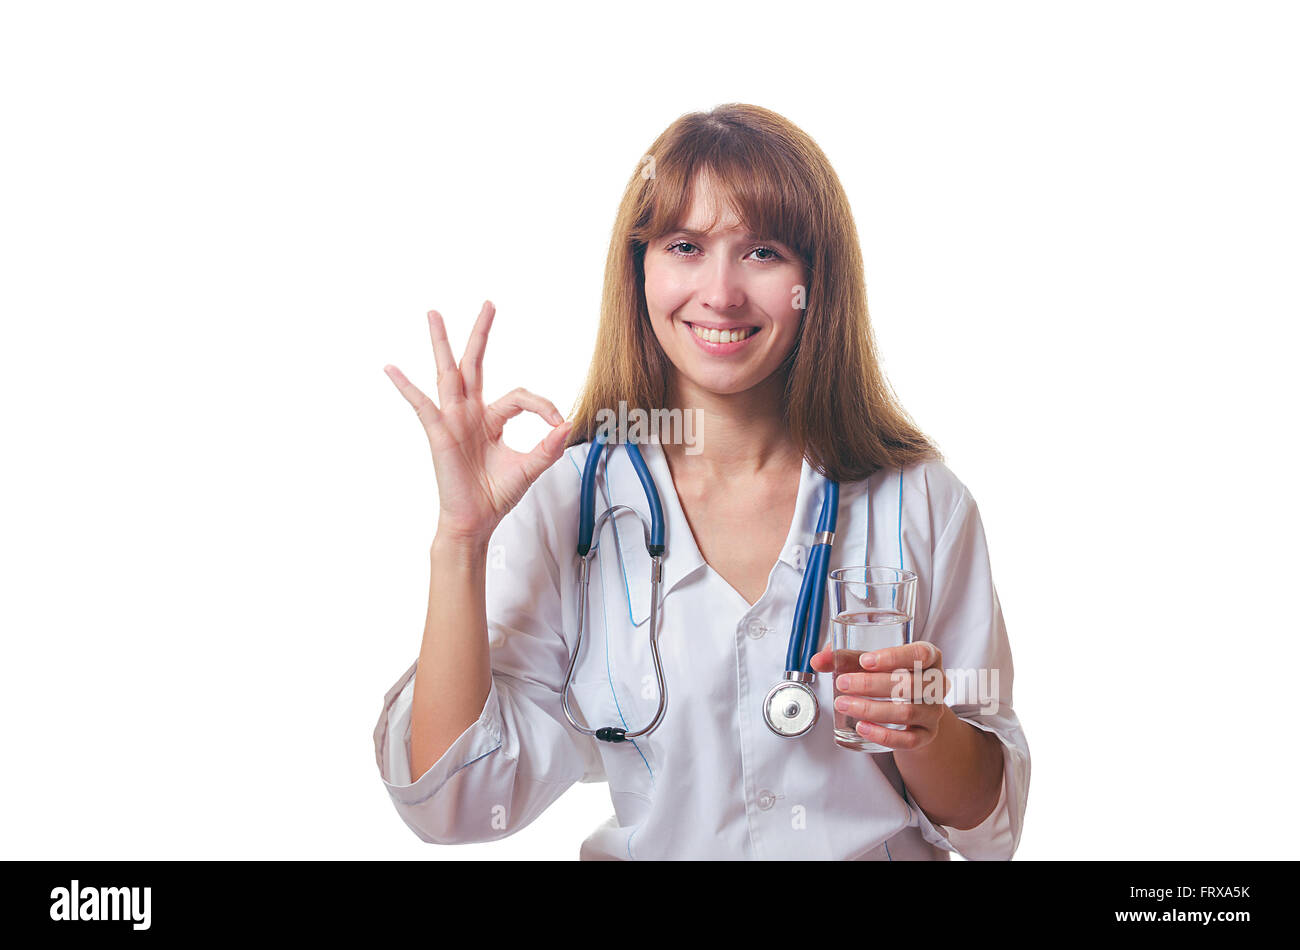 Der Arzt hält ein Glas mit Wasser in der hand und zeigt "OK". Stockfoto